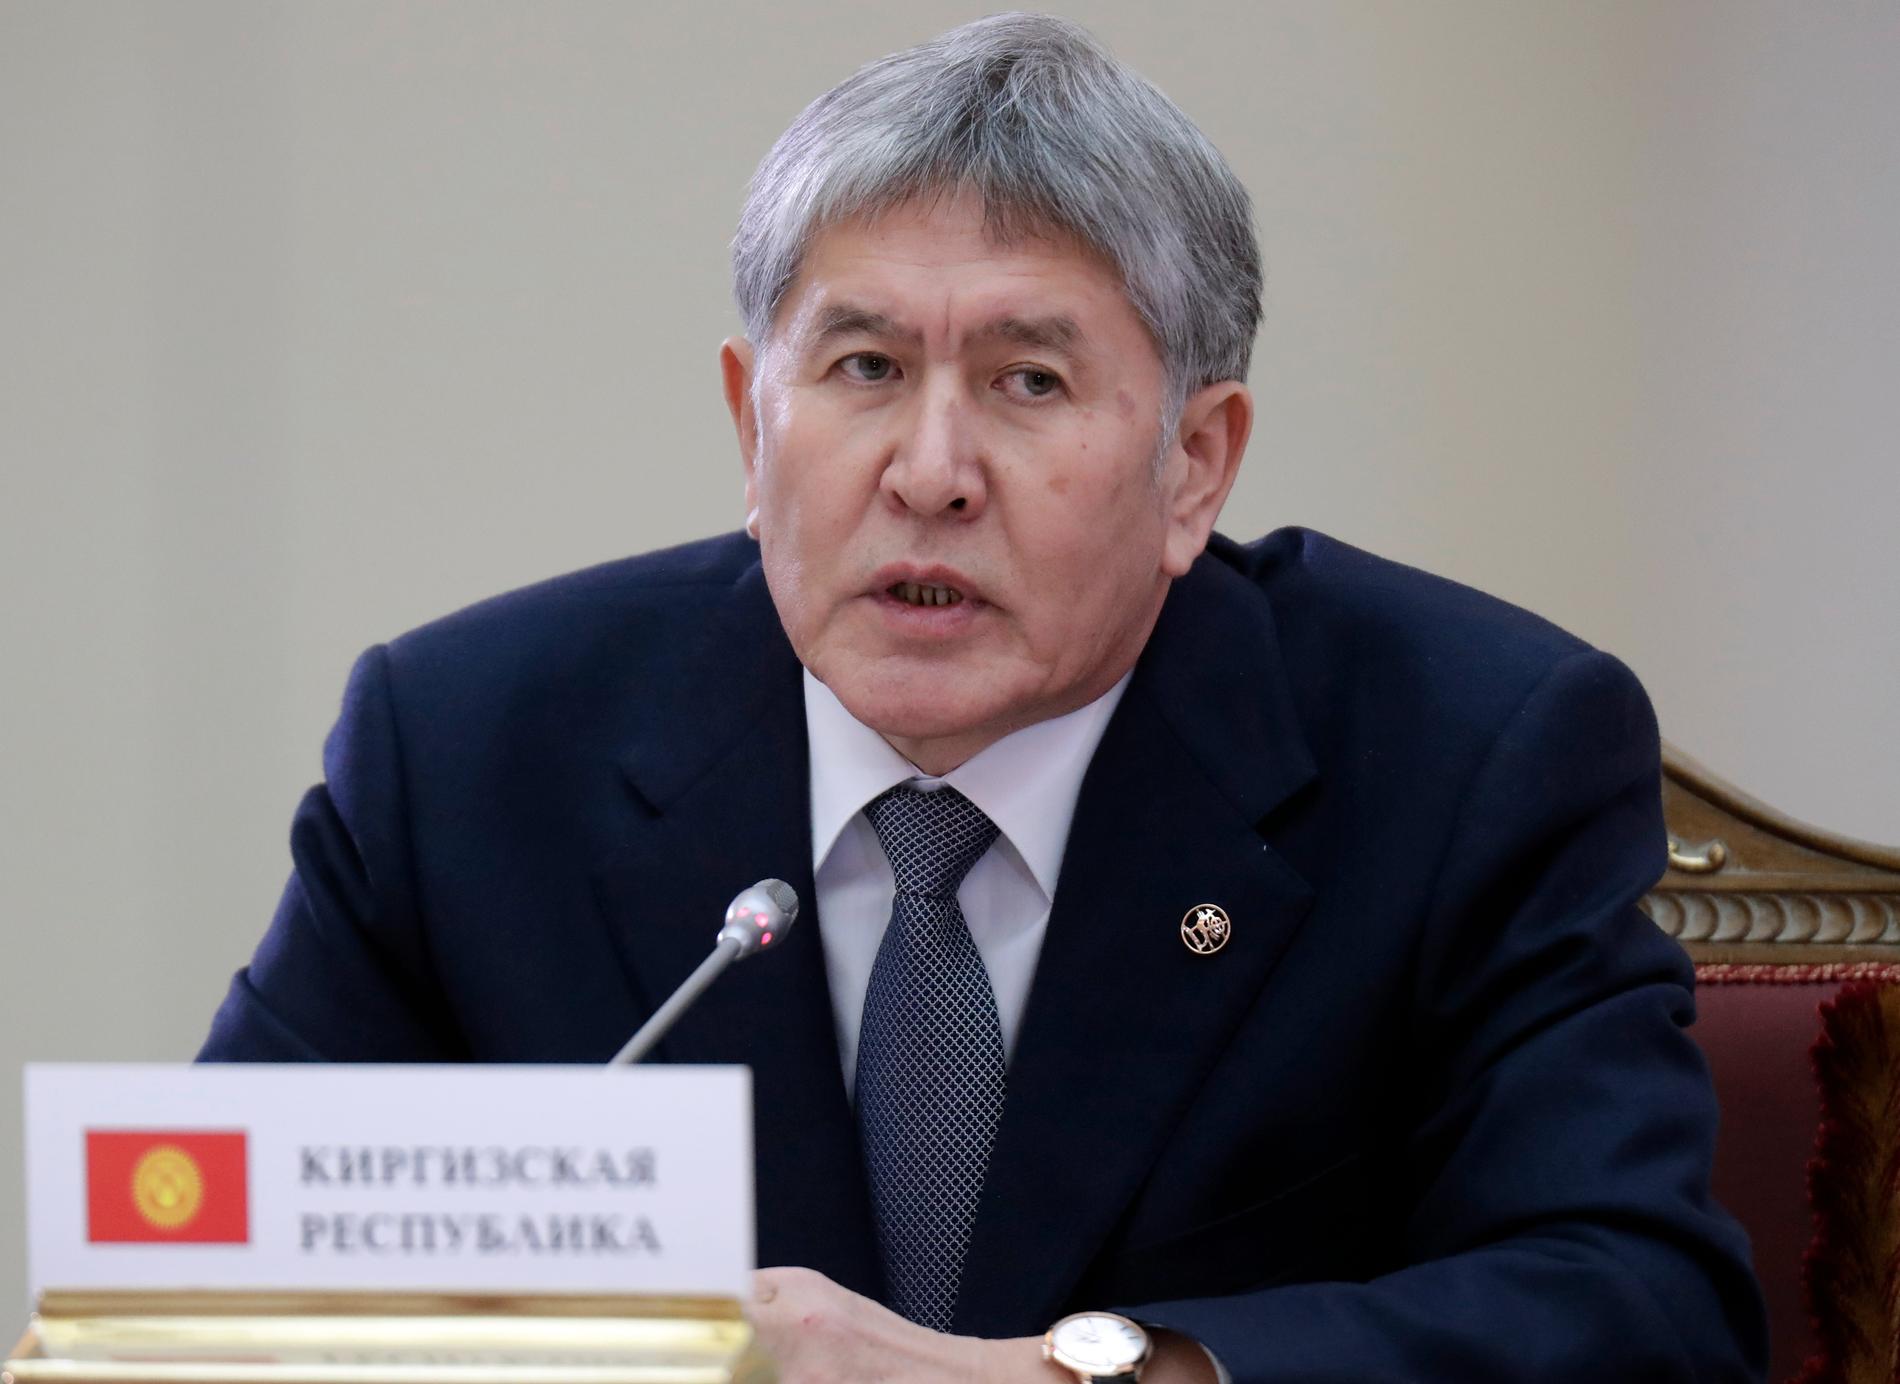 Kirgizistans tidigare president Almazbek Atambajev. Arkivbild.